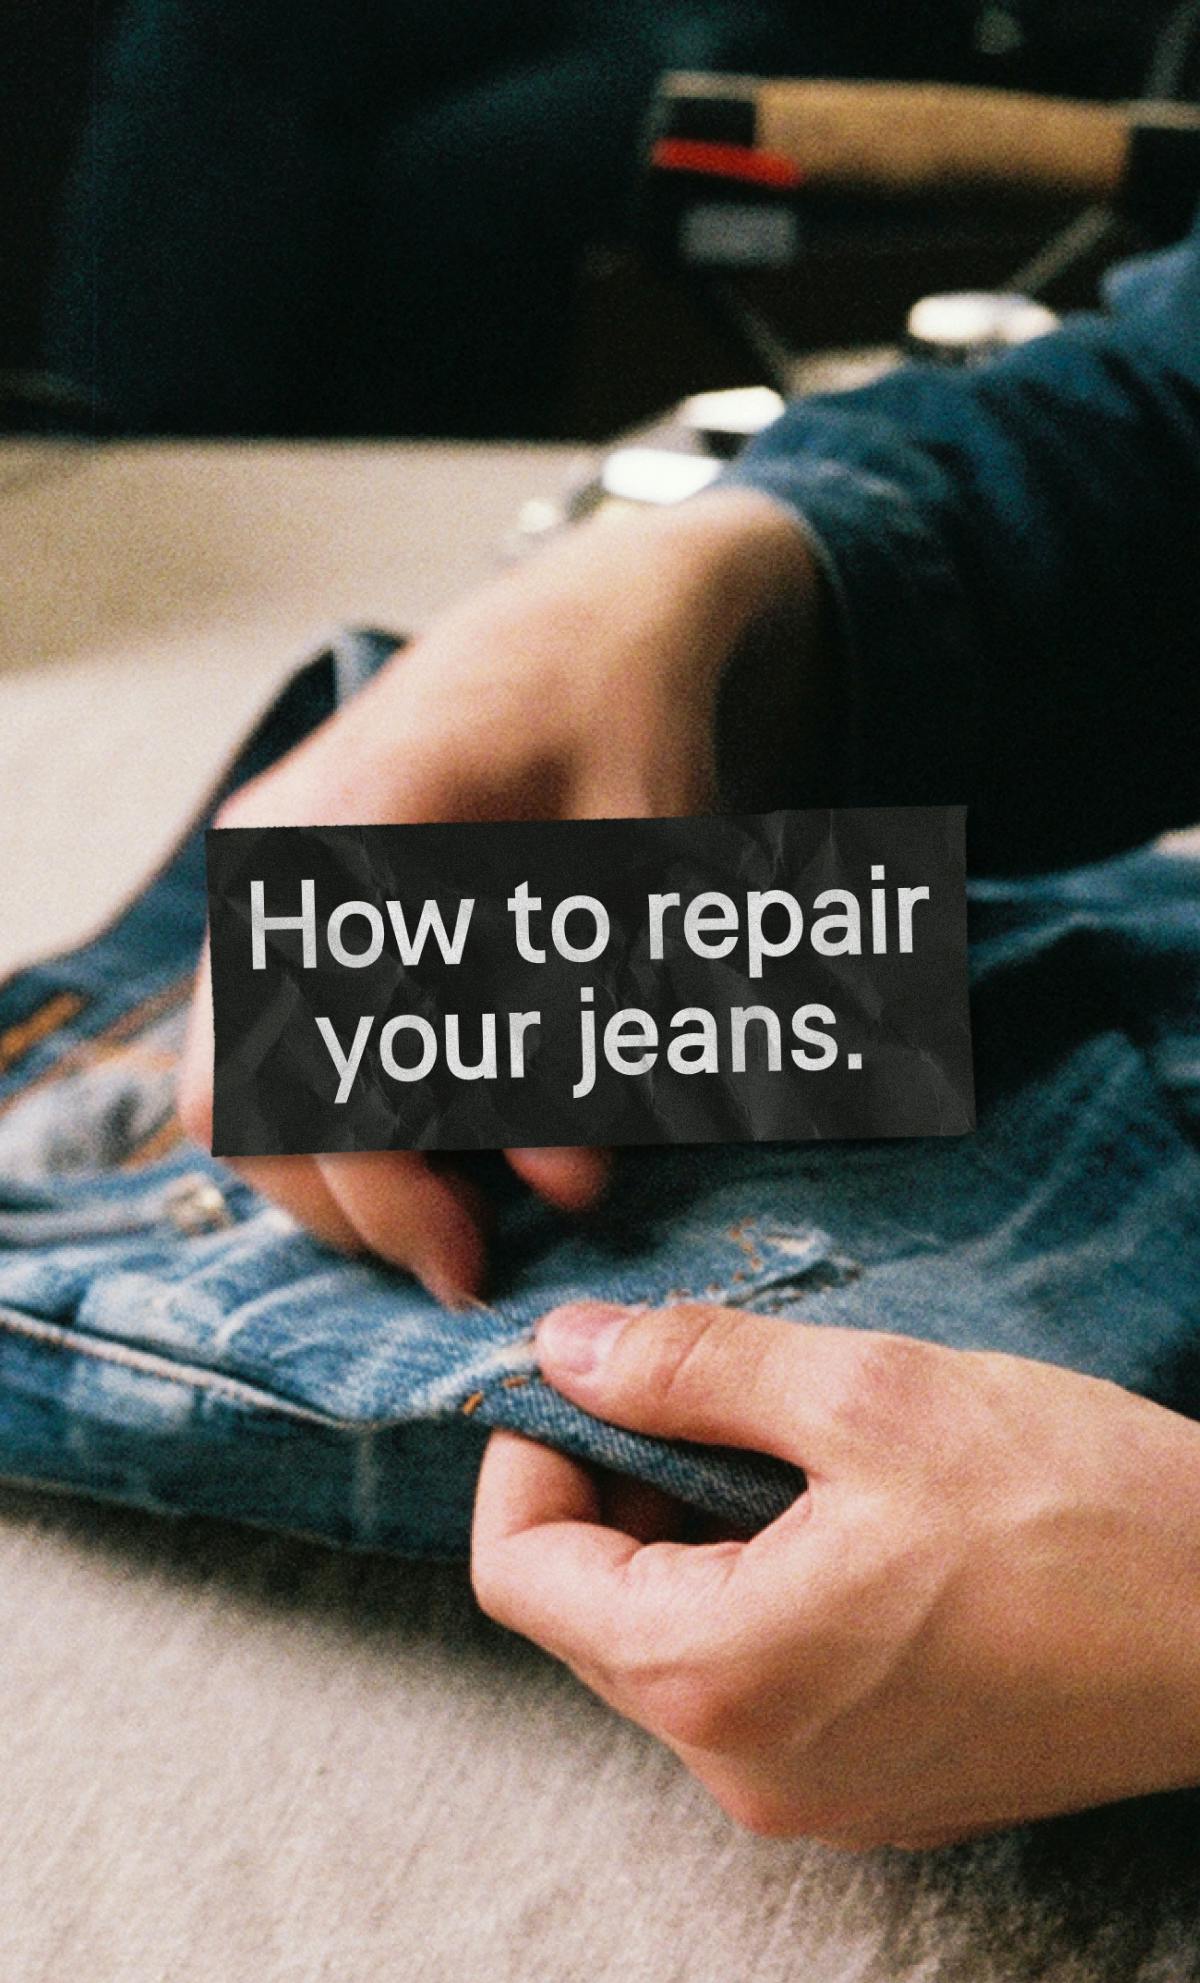 How to repair